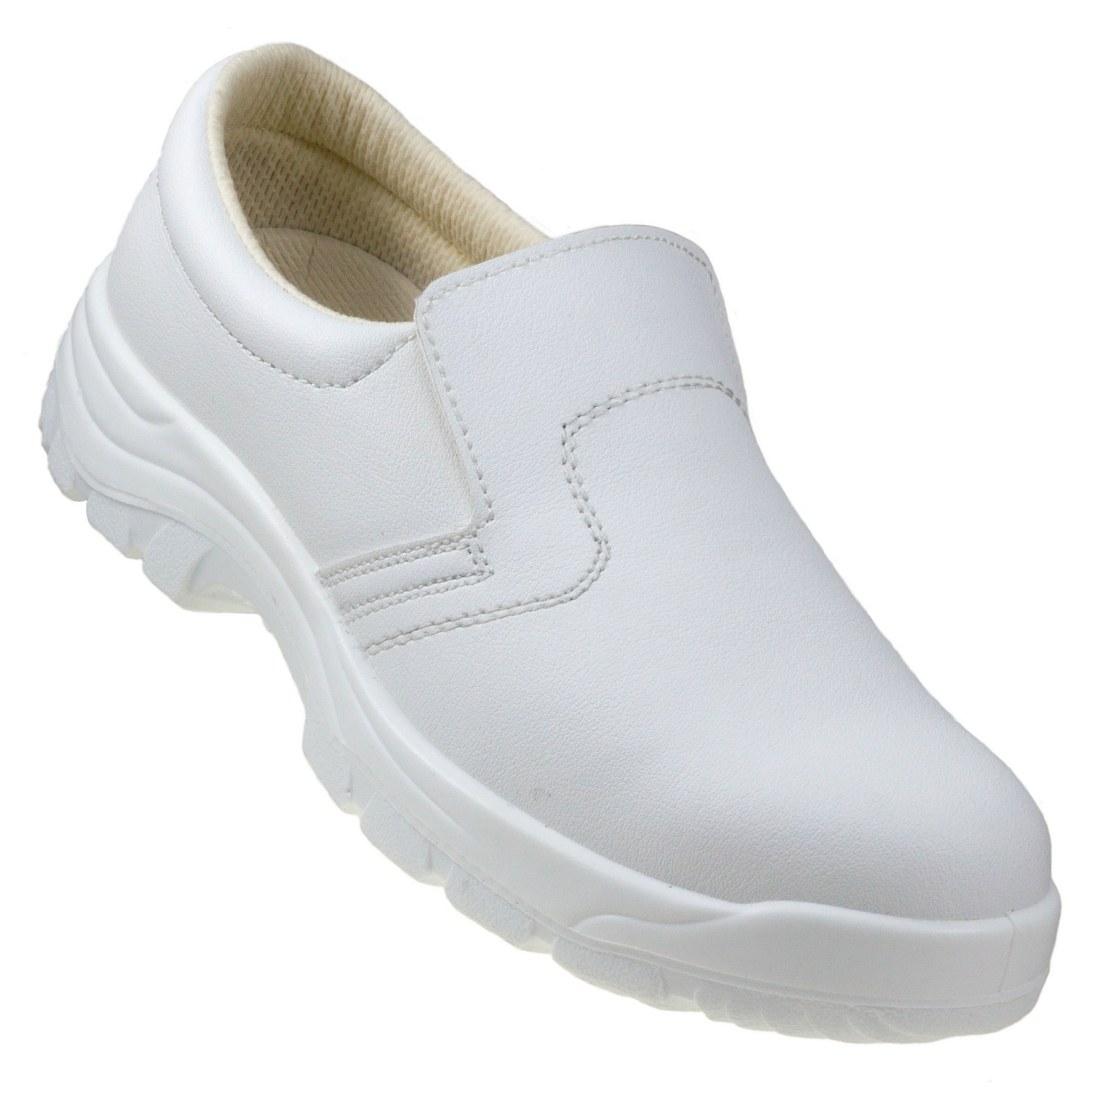 Buty robocze białe z podnoskiem ochronnym